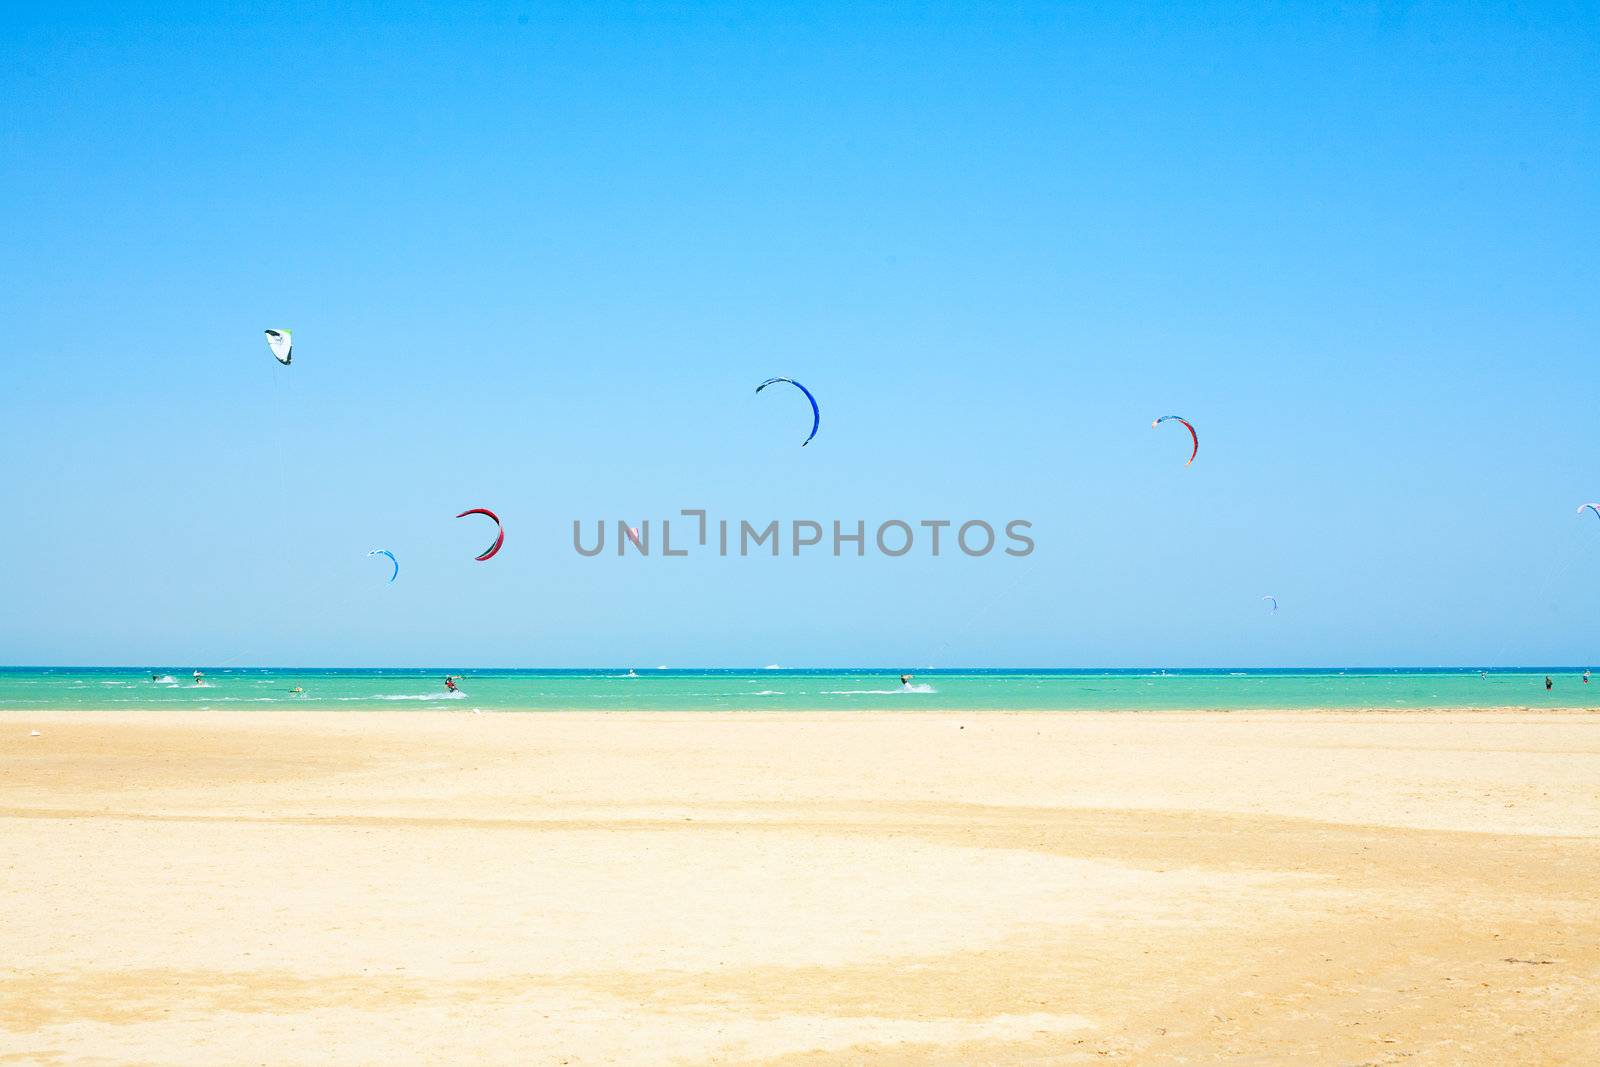 water sport on beach in Africa, kiteboarding